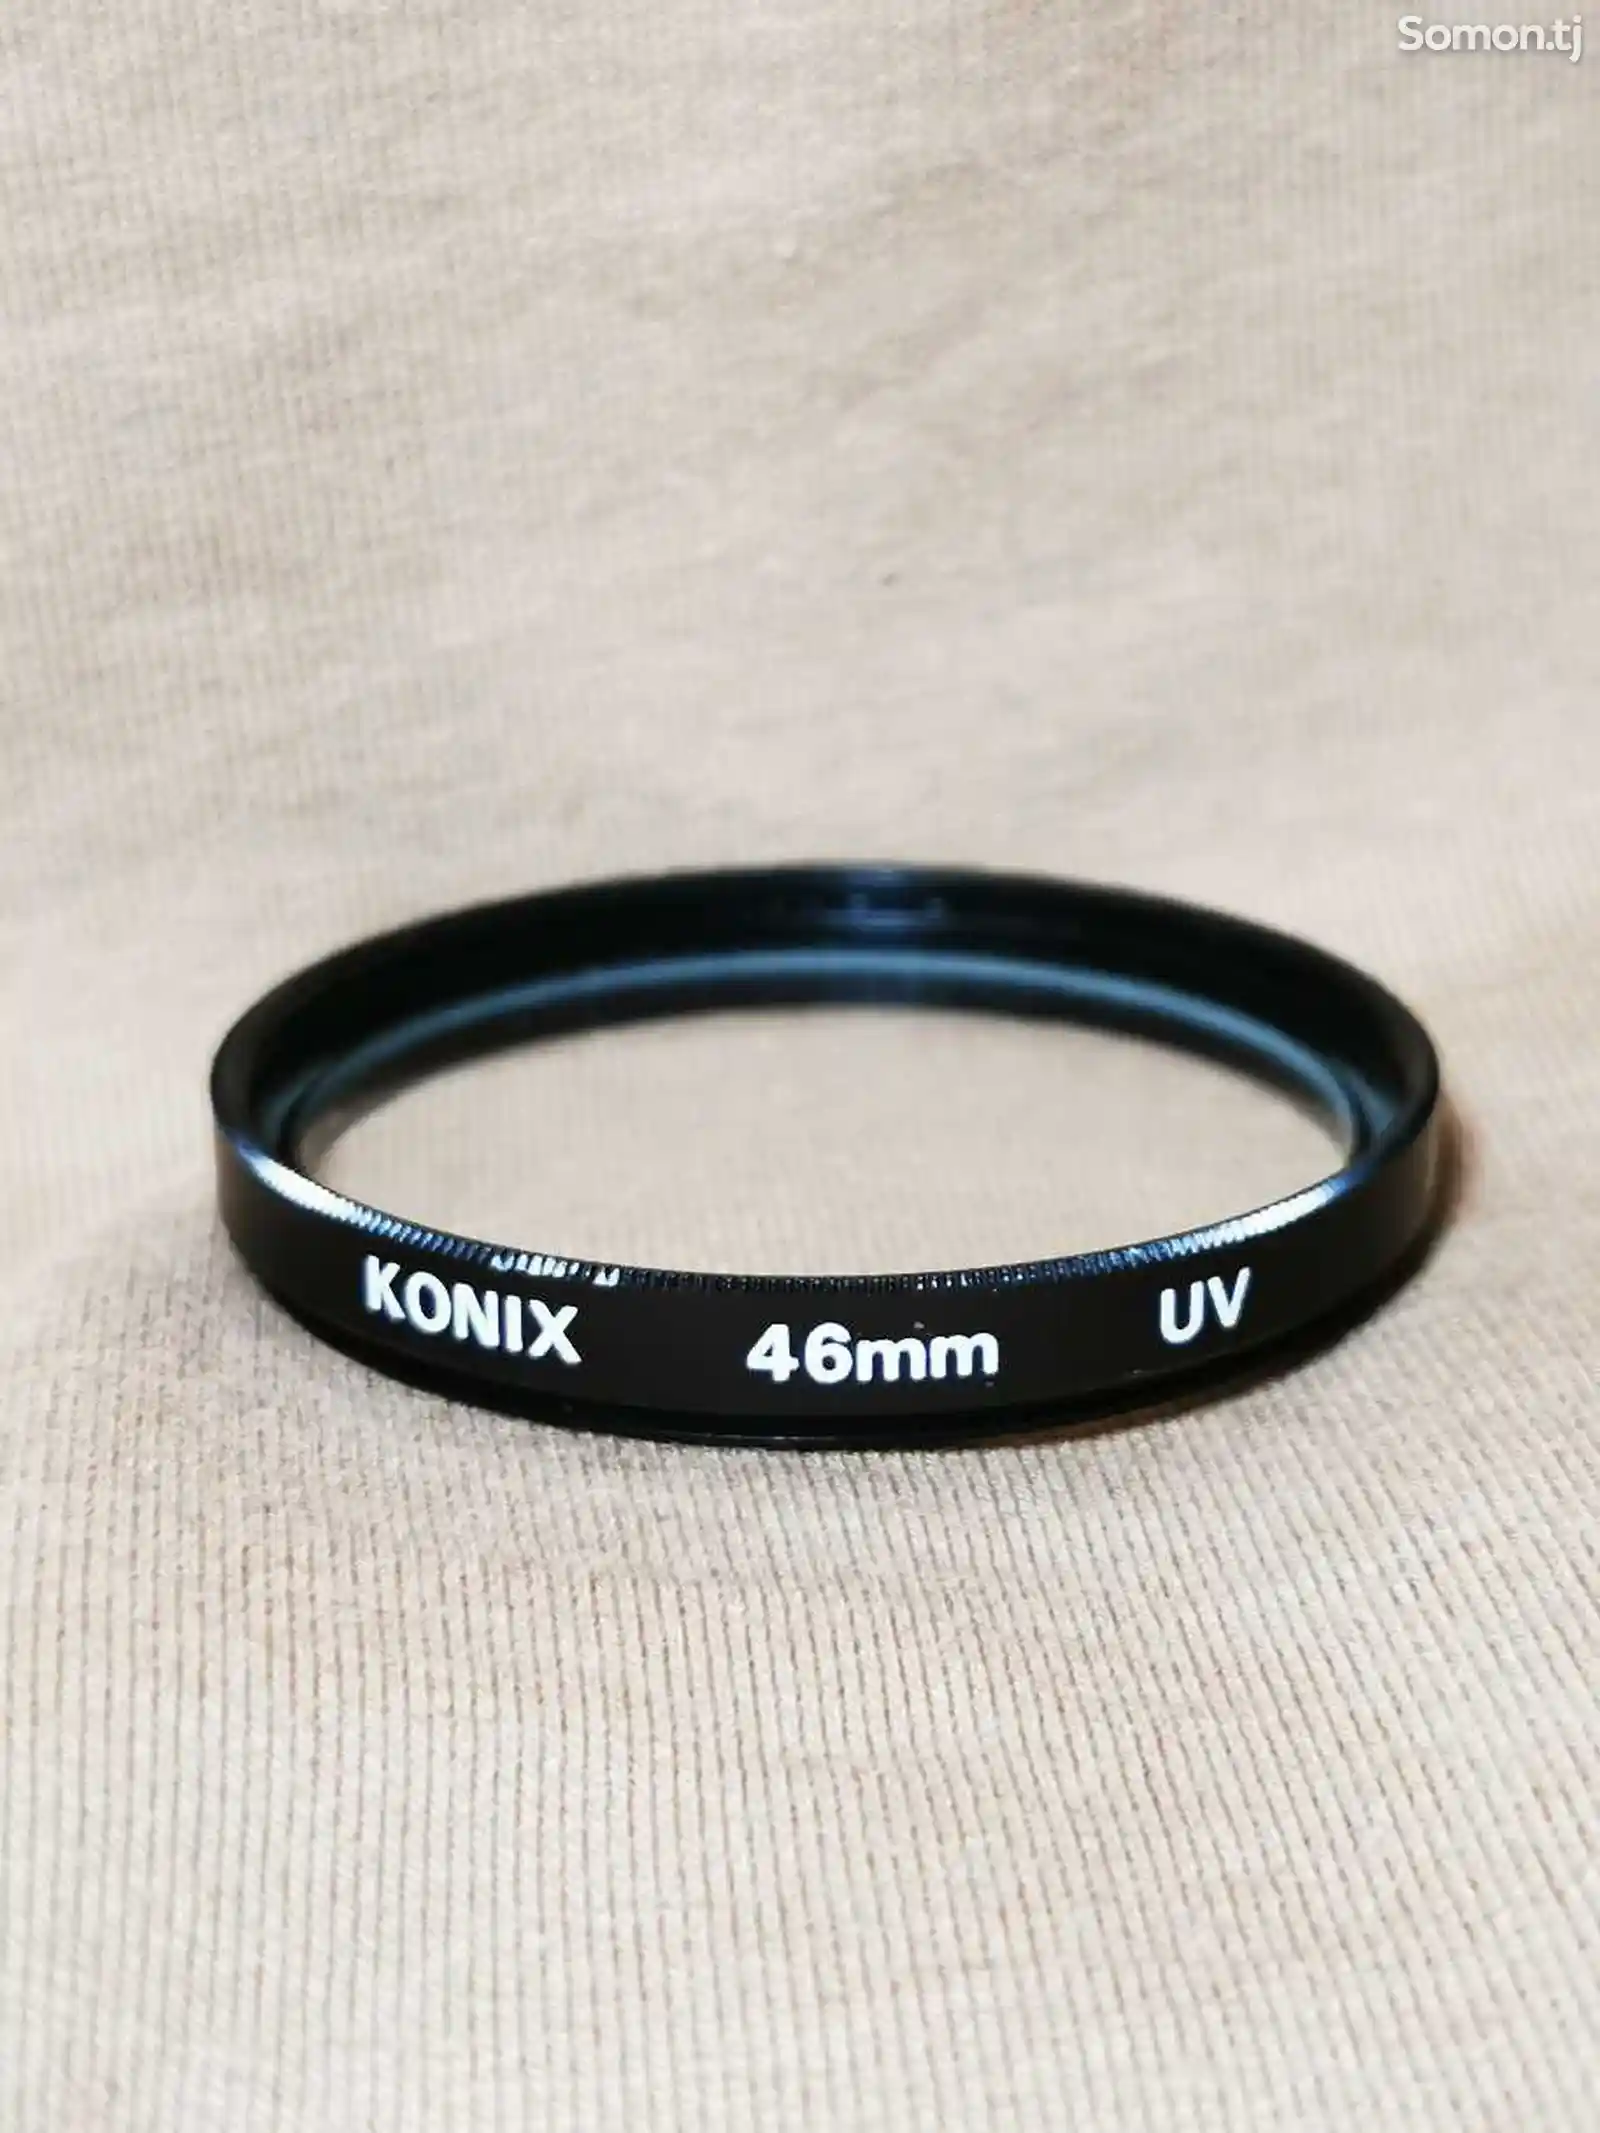 Фильтр для объектив Konix 46mm uv Japan-1